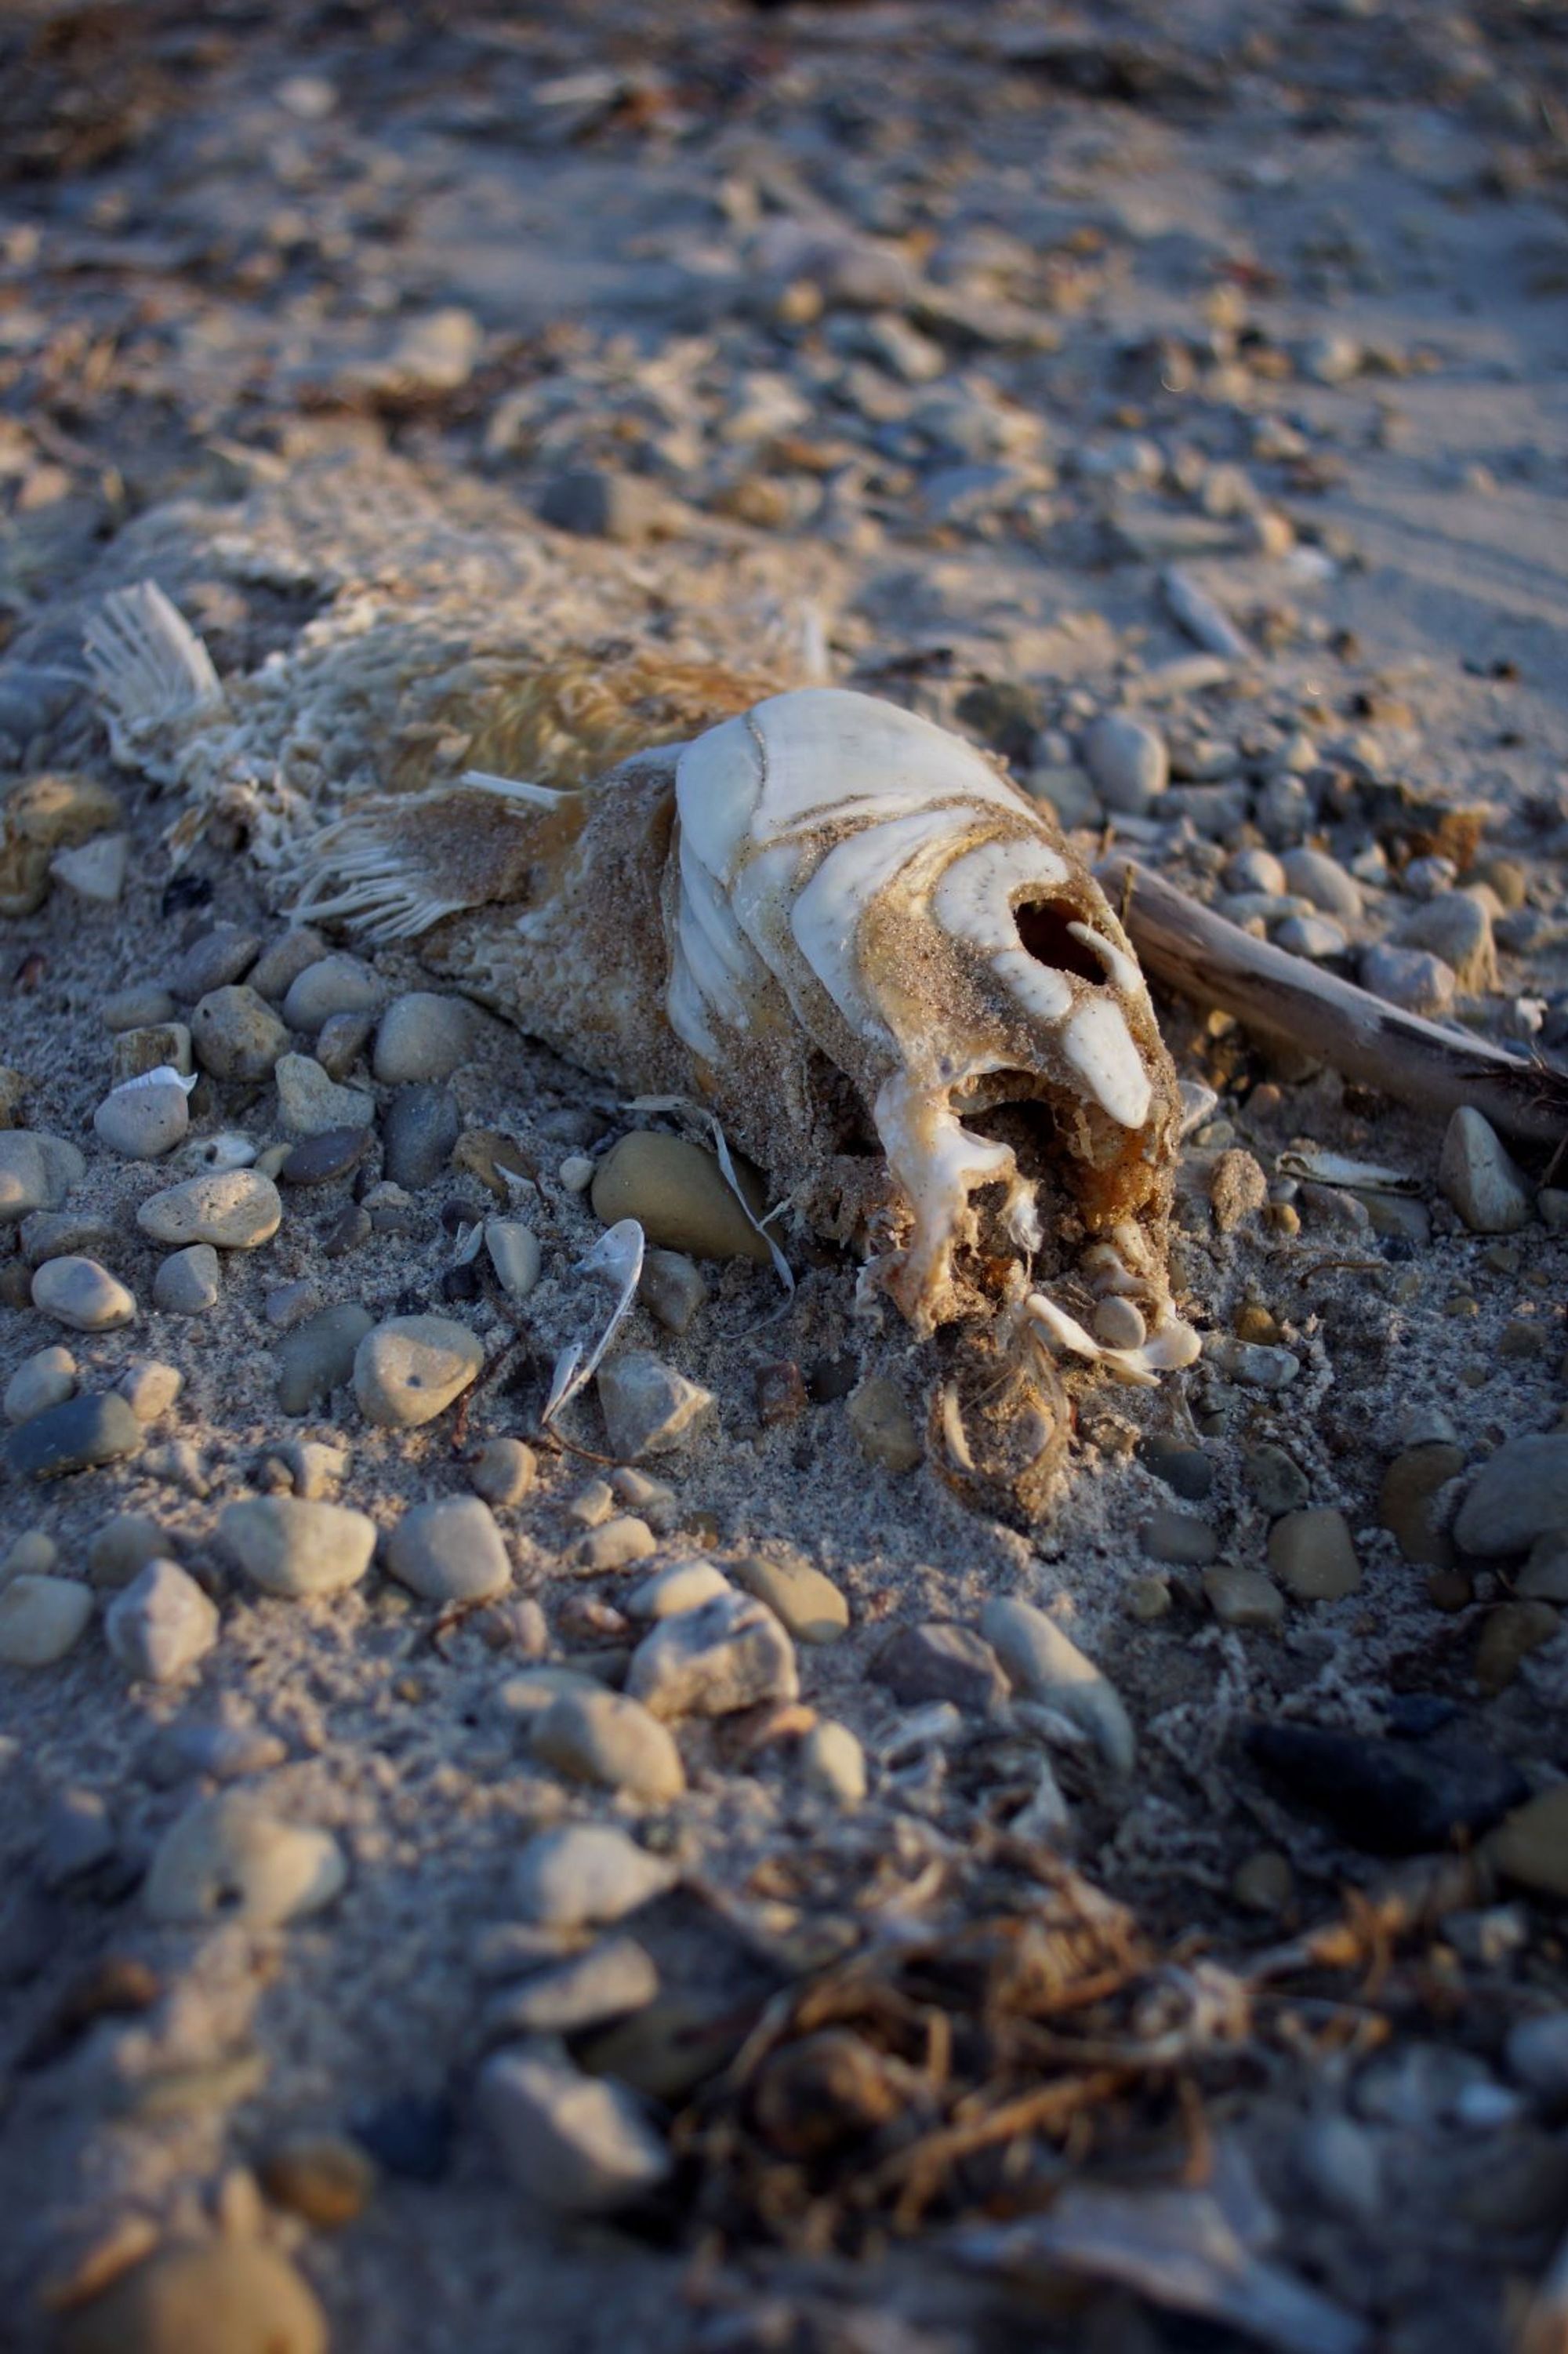 A dead fish on the beach